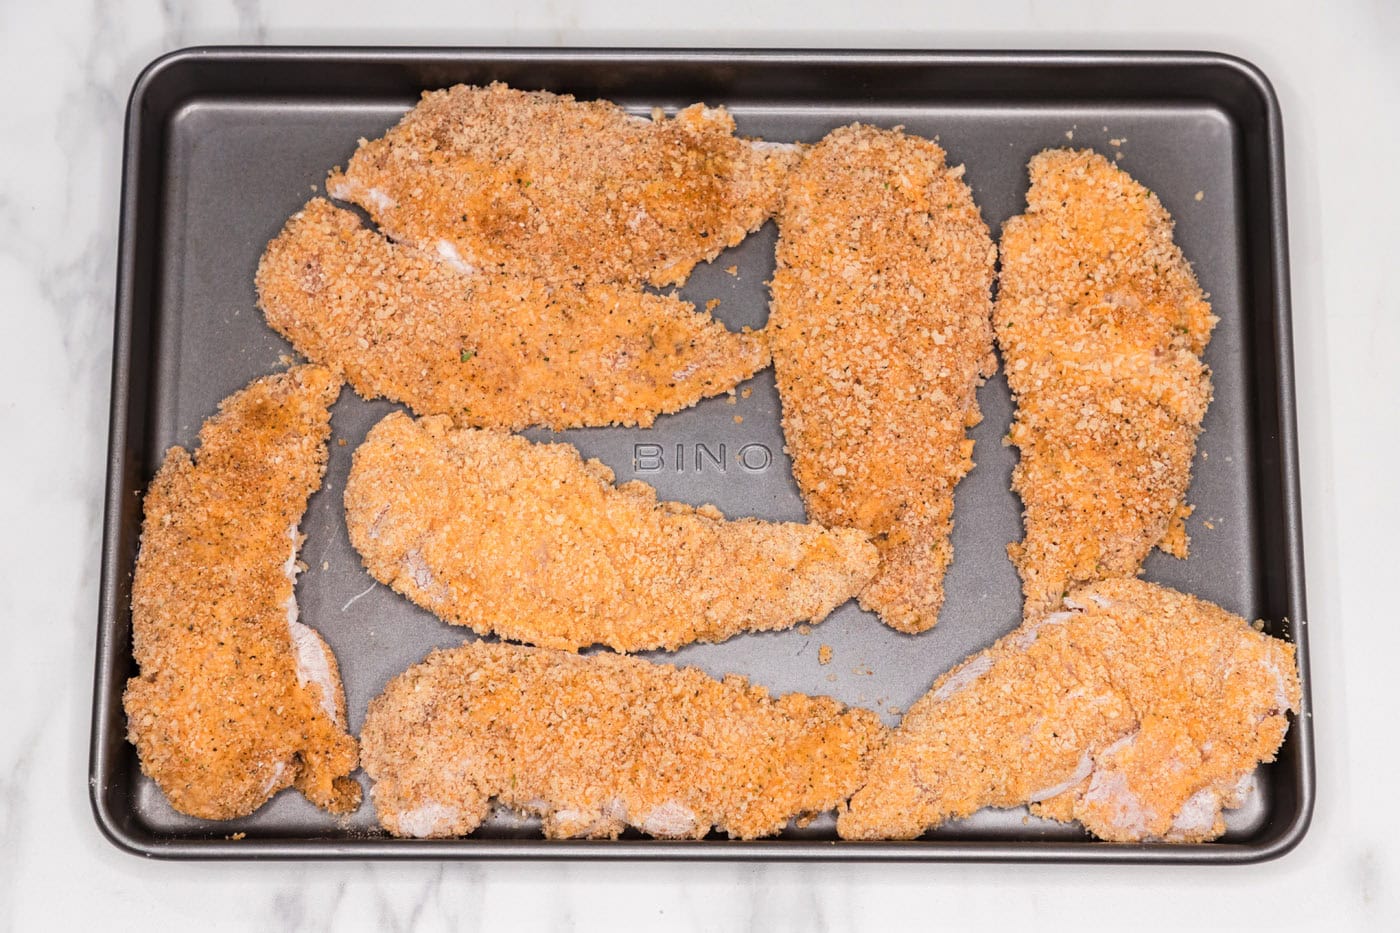 panko breadcrumb coated chicken tenders on a baking sheet